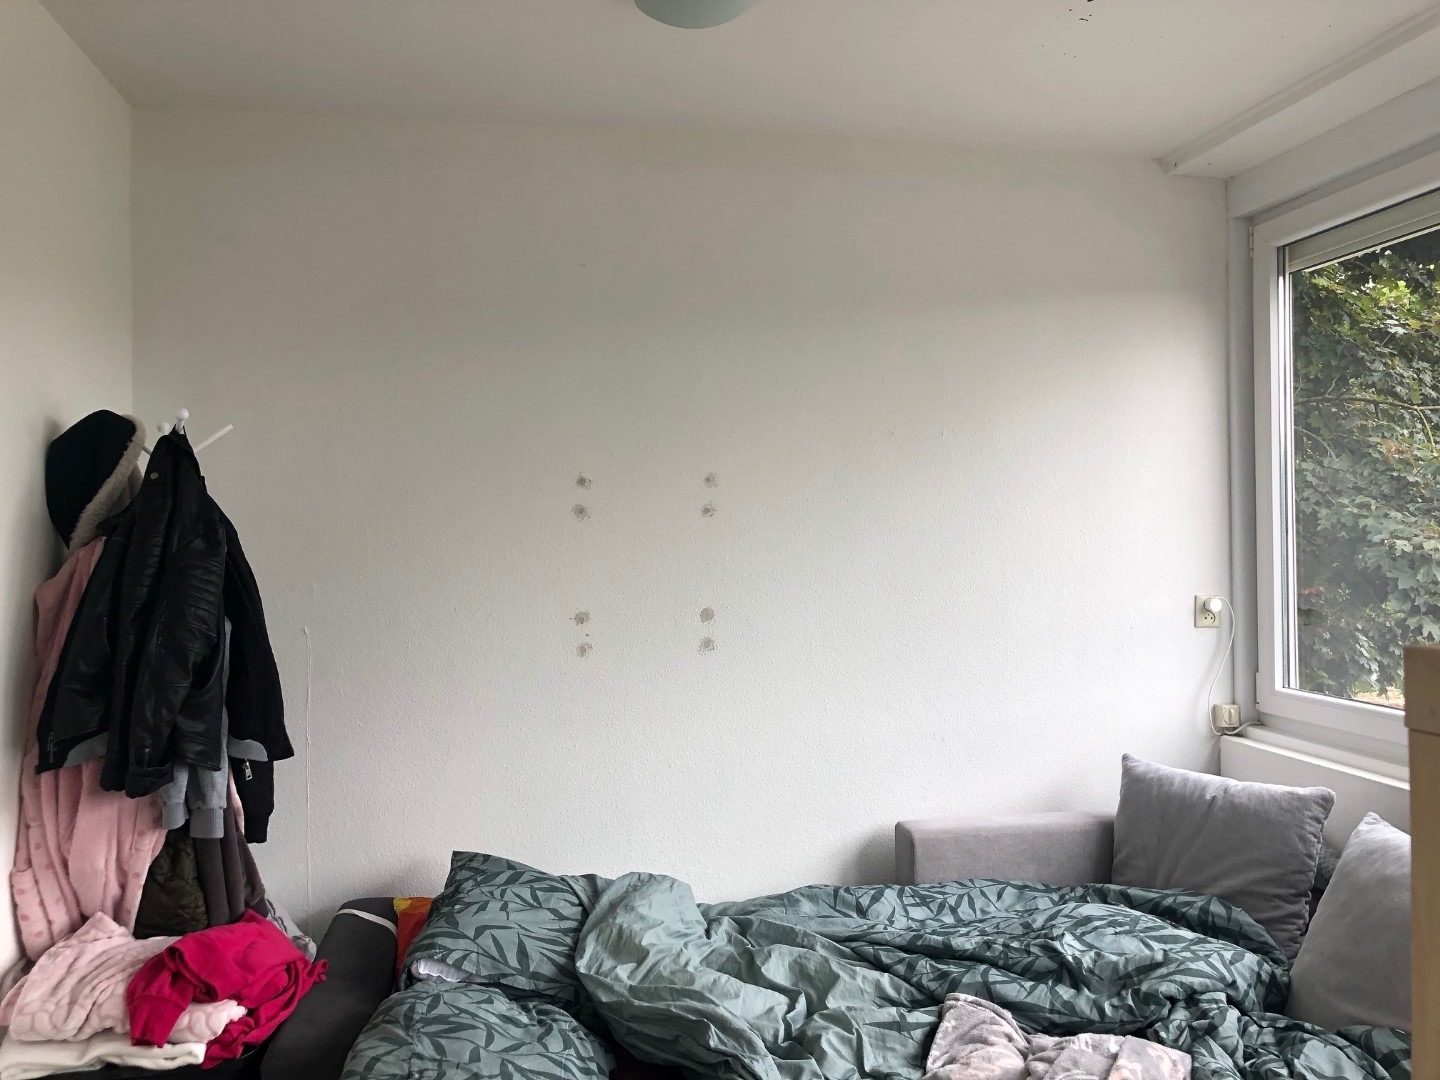 Woning / appartement - Heerlen - De Kommert 26